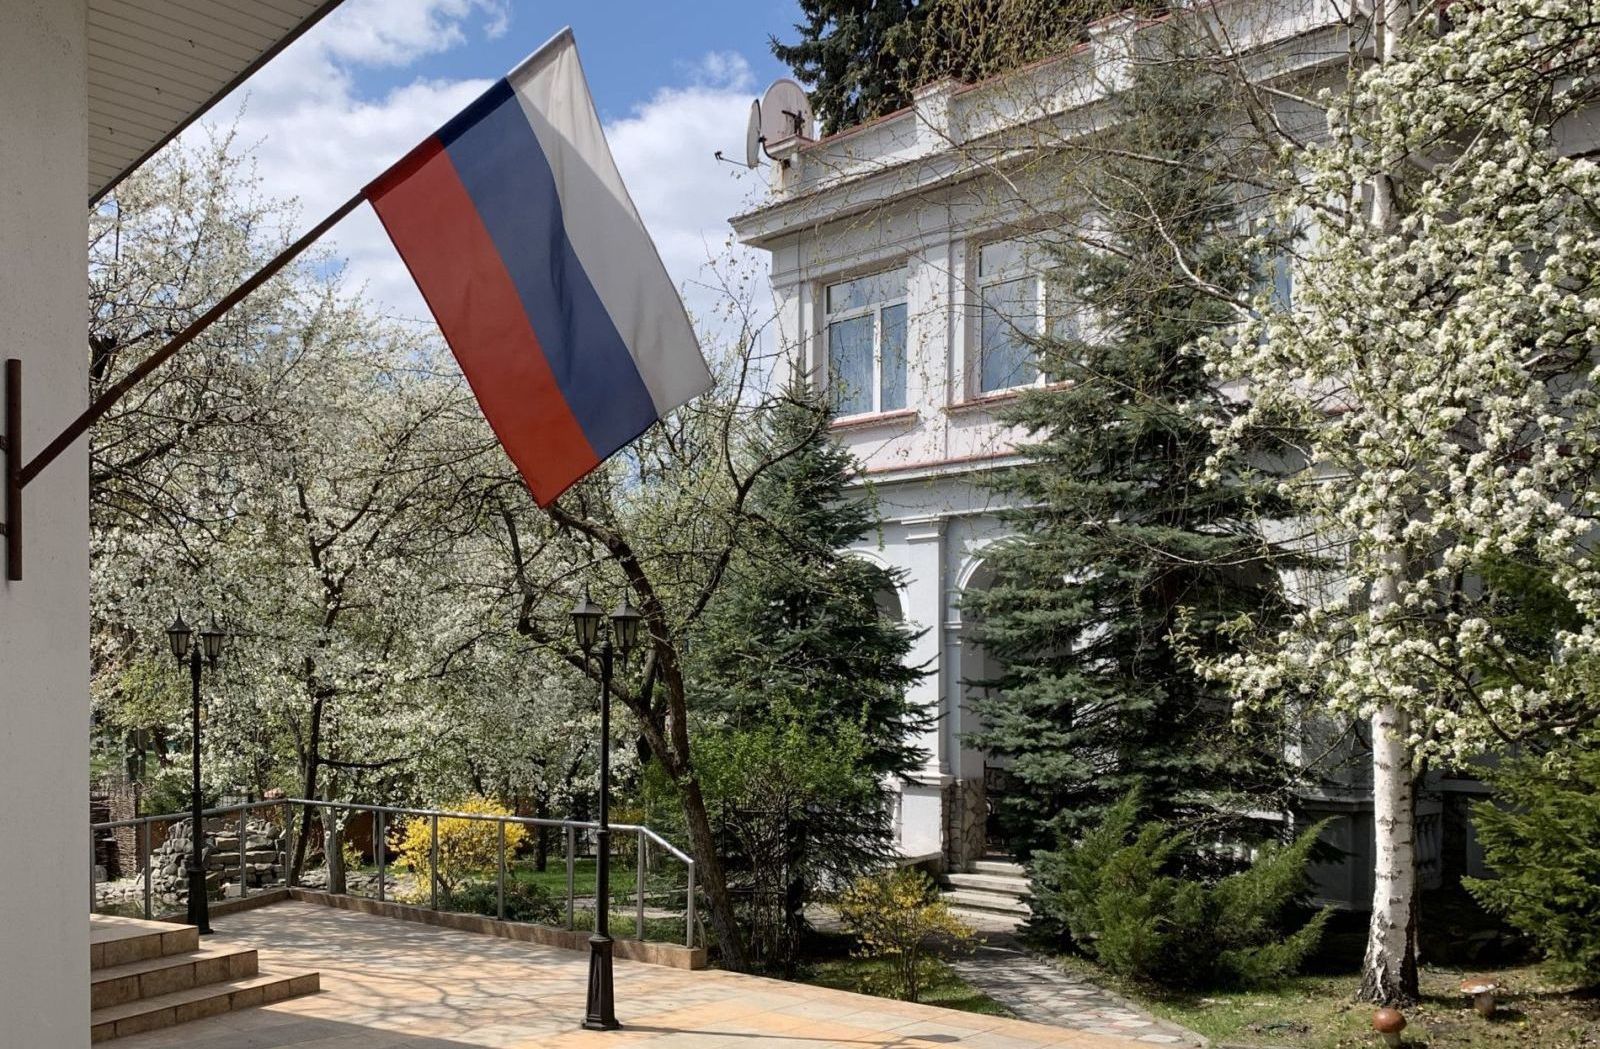 Rosja zamyka dla obywateli konsulat we Lwowie. Podano oficjalny powód